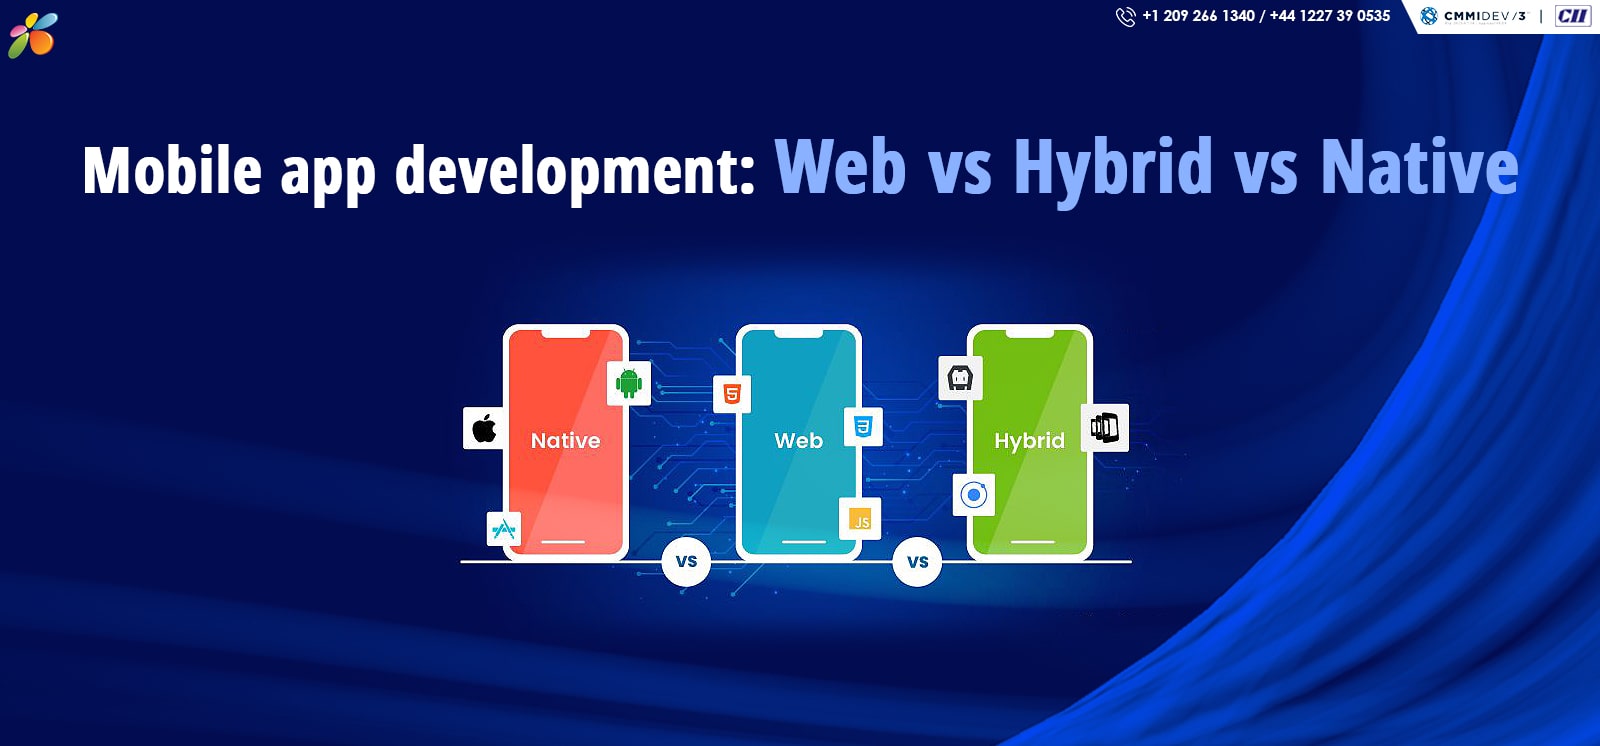 Comparing Mobile app development: Web vs Hybrid vs Native